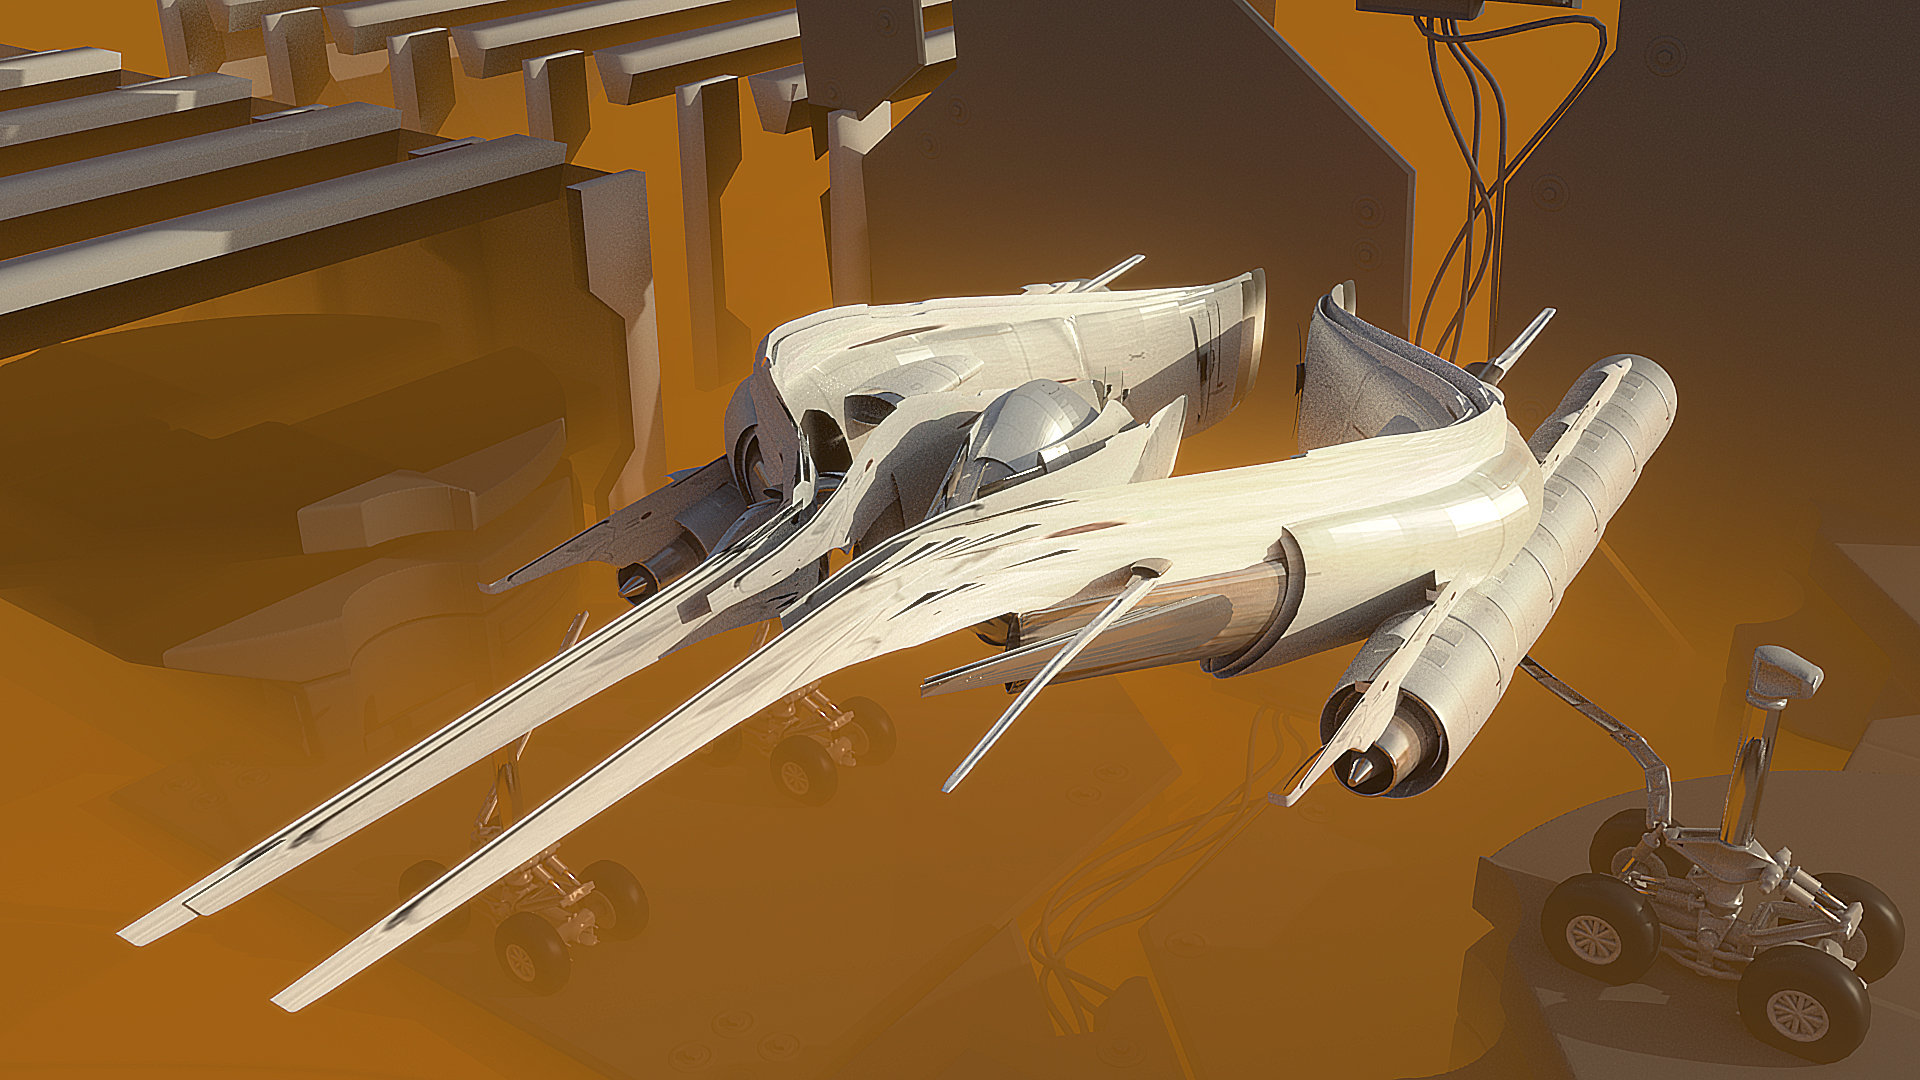 efflam-mercier-cool-spaceship-render.jpg